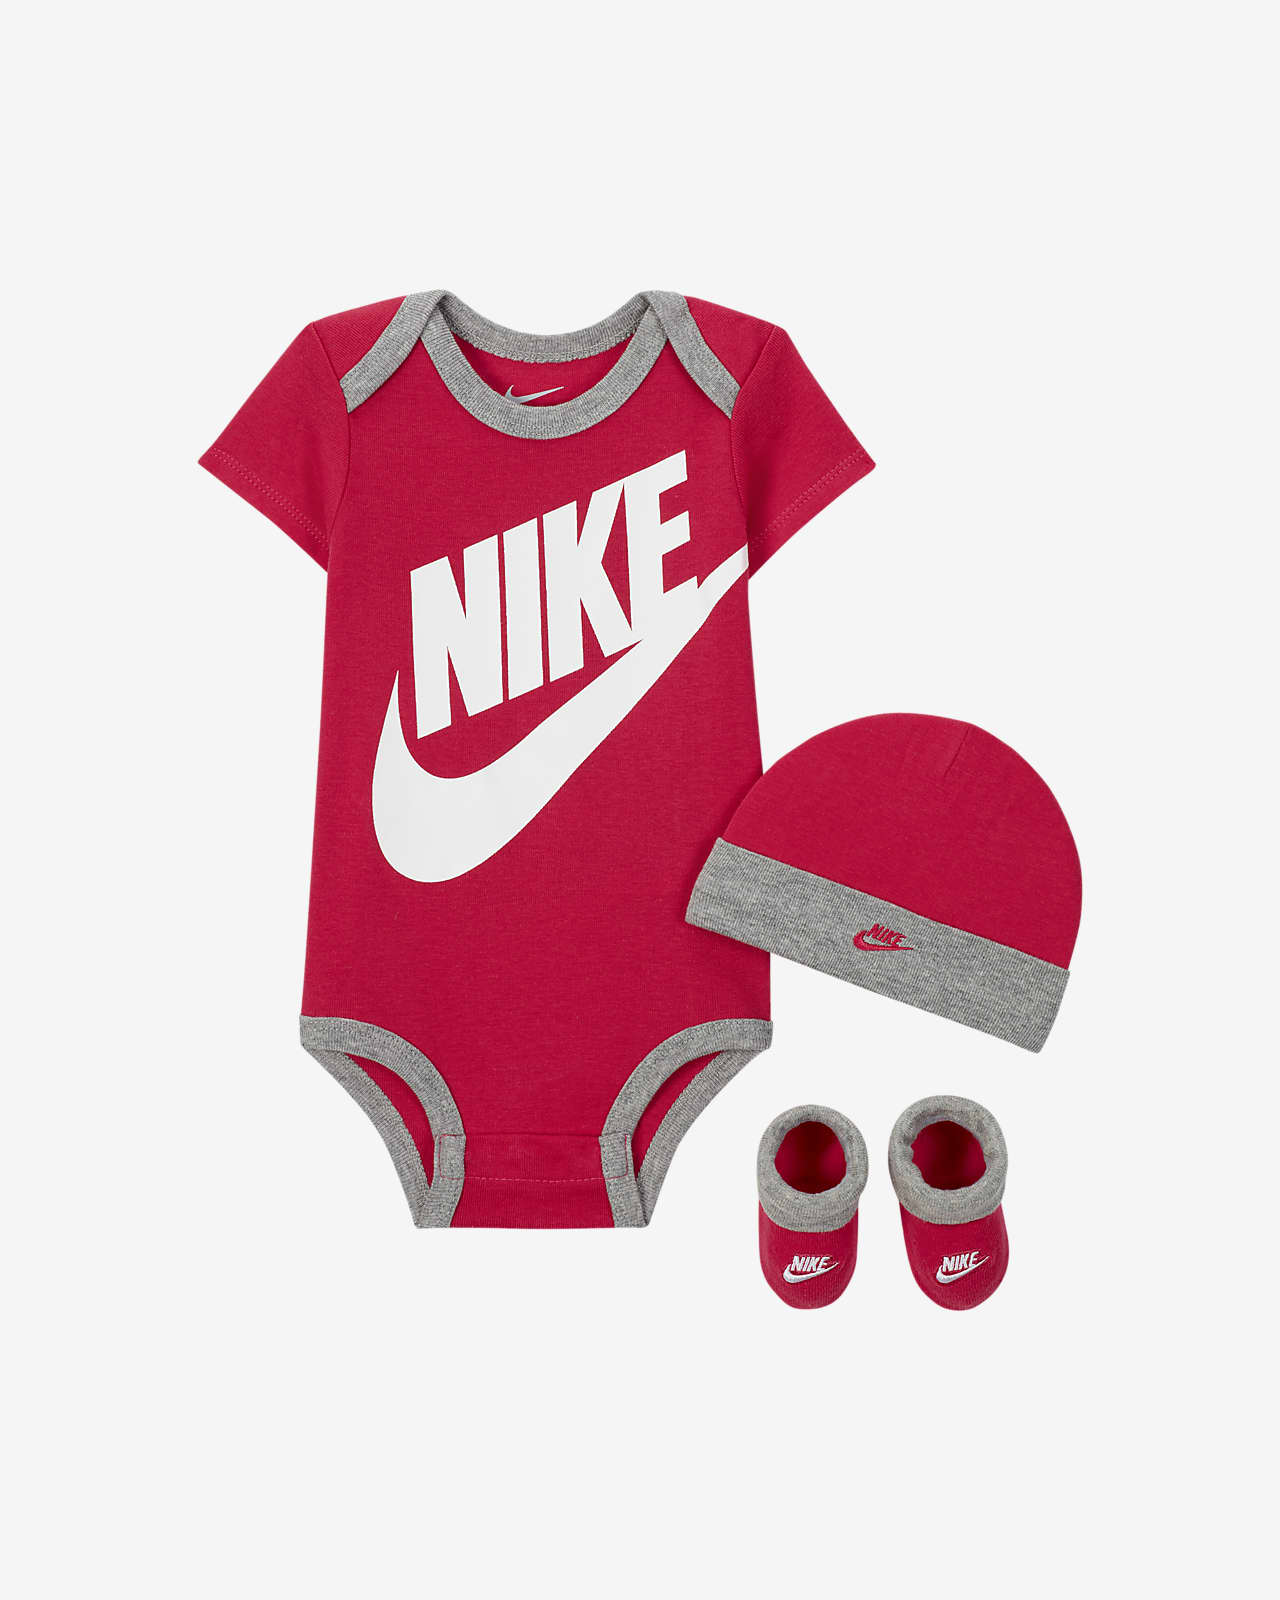 Trojdílná kojenecká souprava Nike (0–6 měsíců)